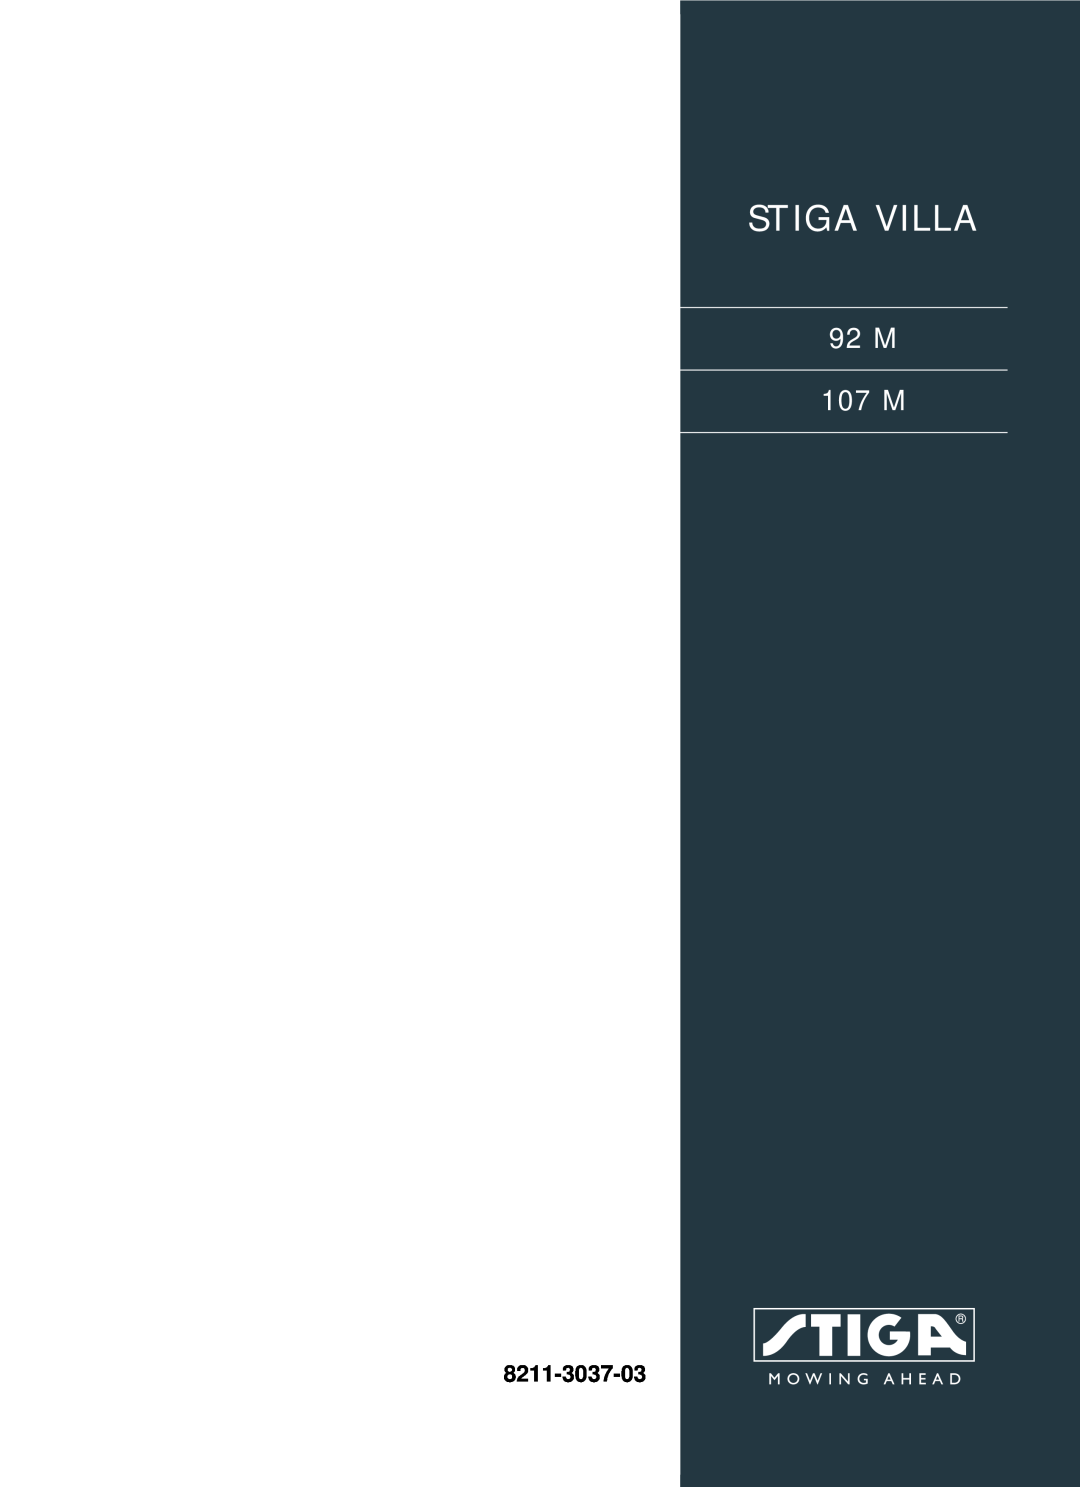 Stiga manual Stiga Villa, 92 M 107 M, 8211-3037-03 